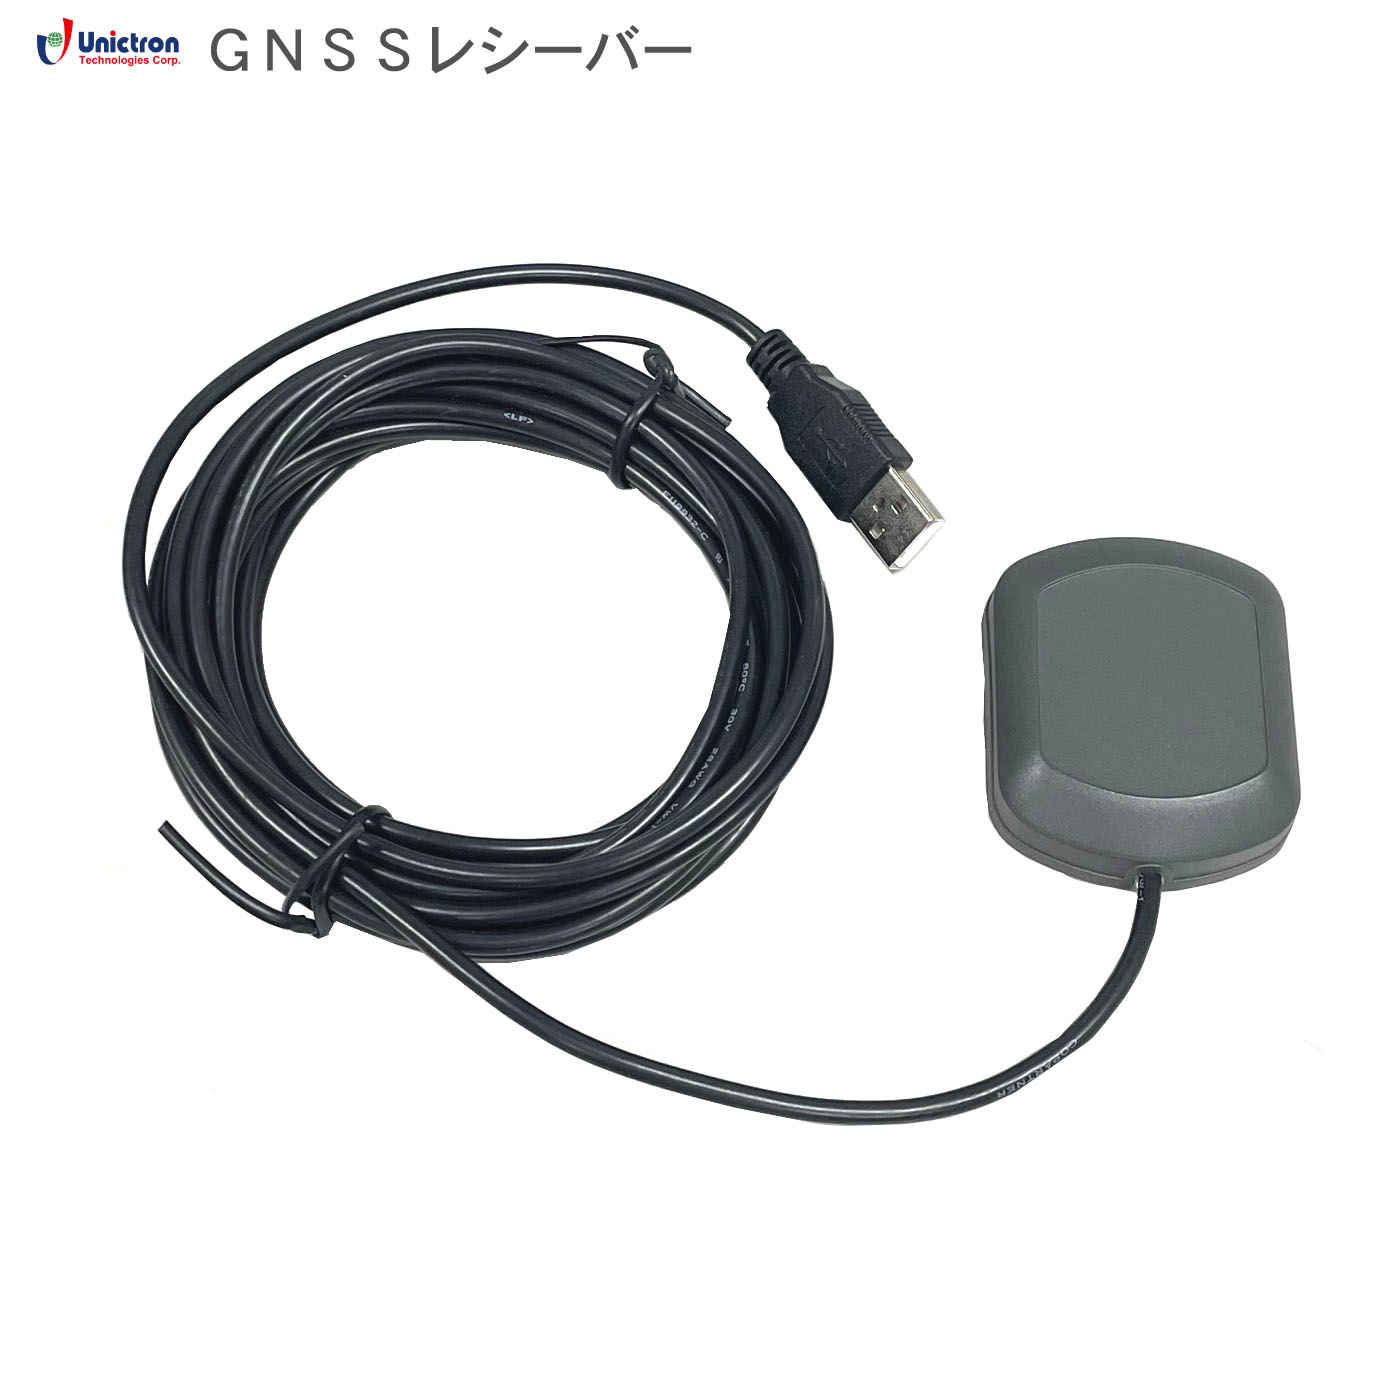 GU-168 USB 5mケーブル GNSSレシーバー